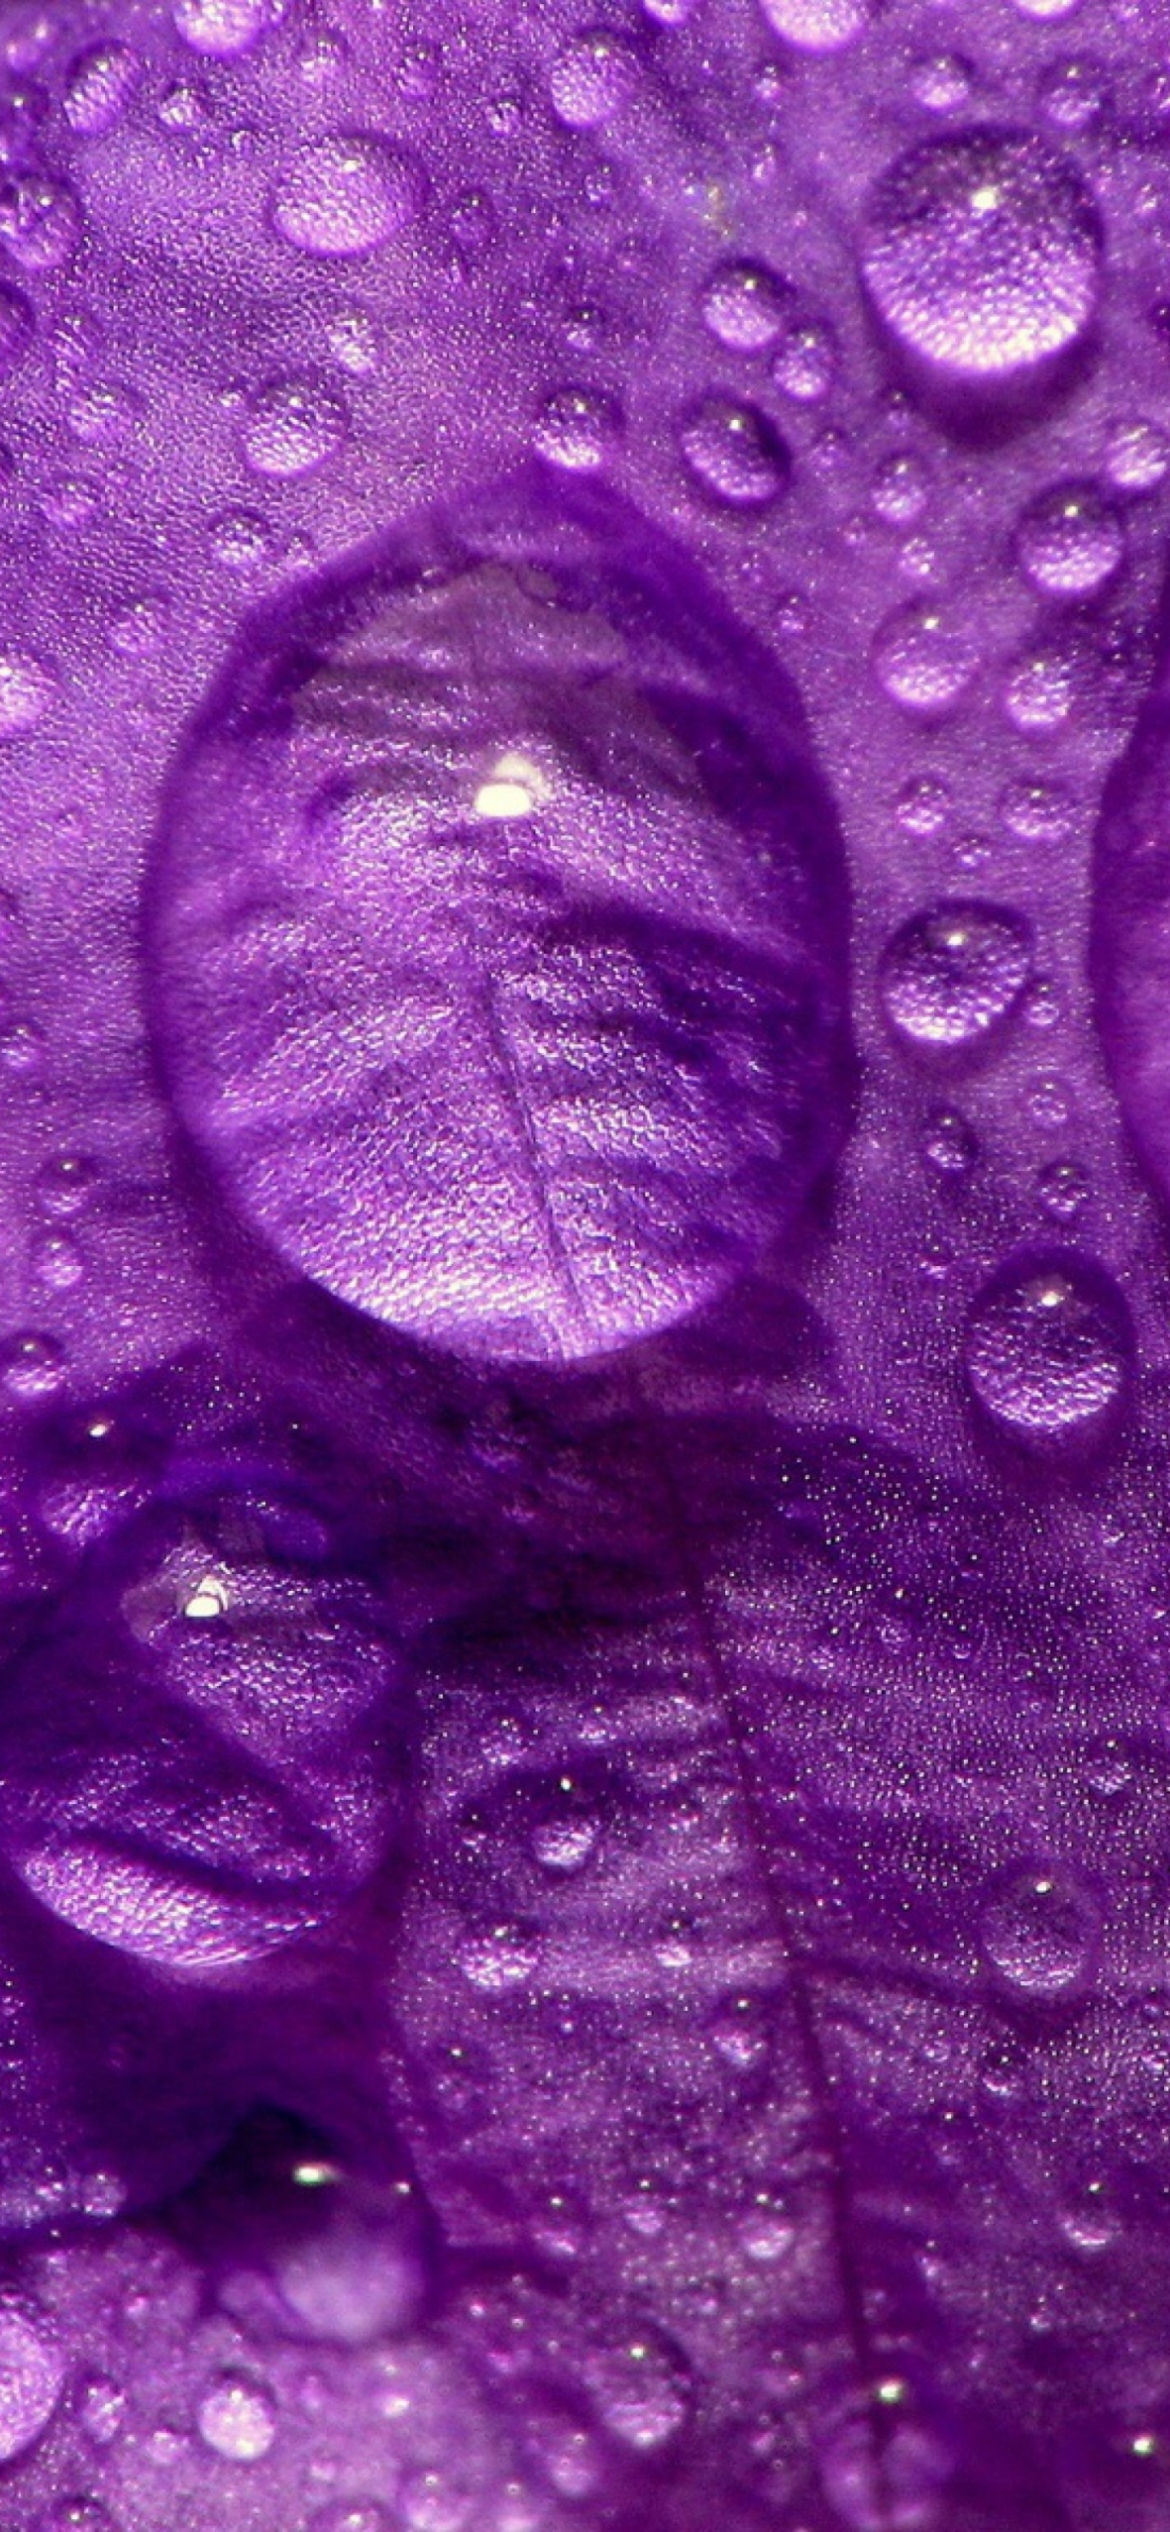 Dew Drops On Violet Petals screenshot #1 1170x2532